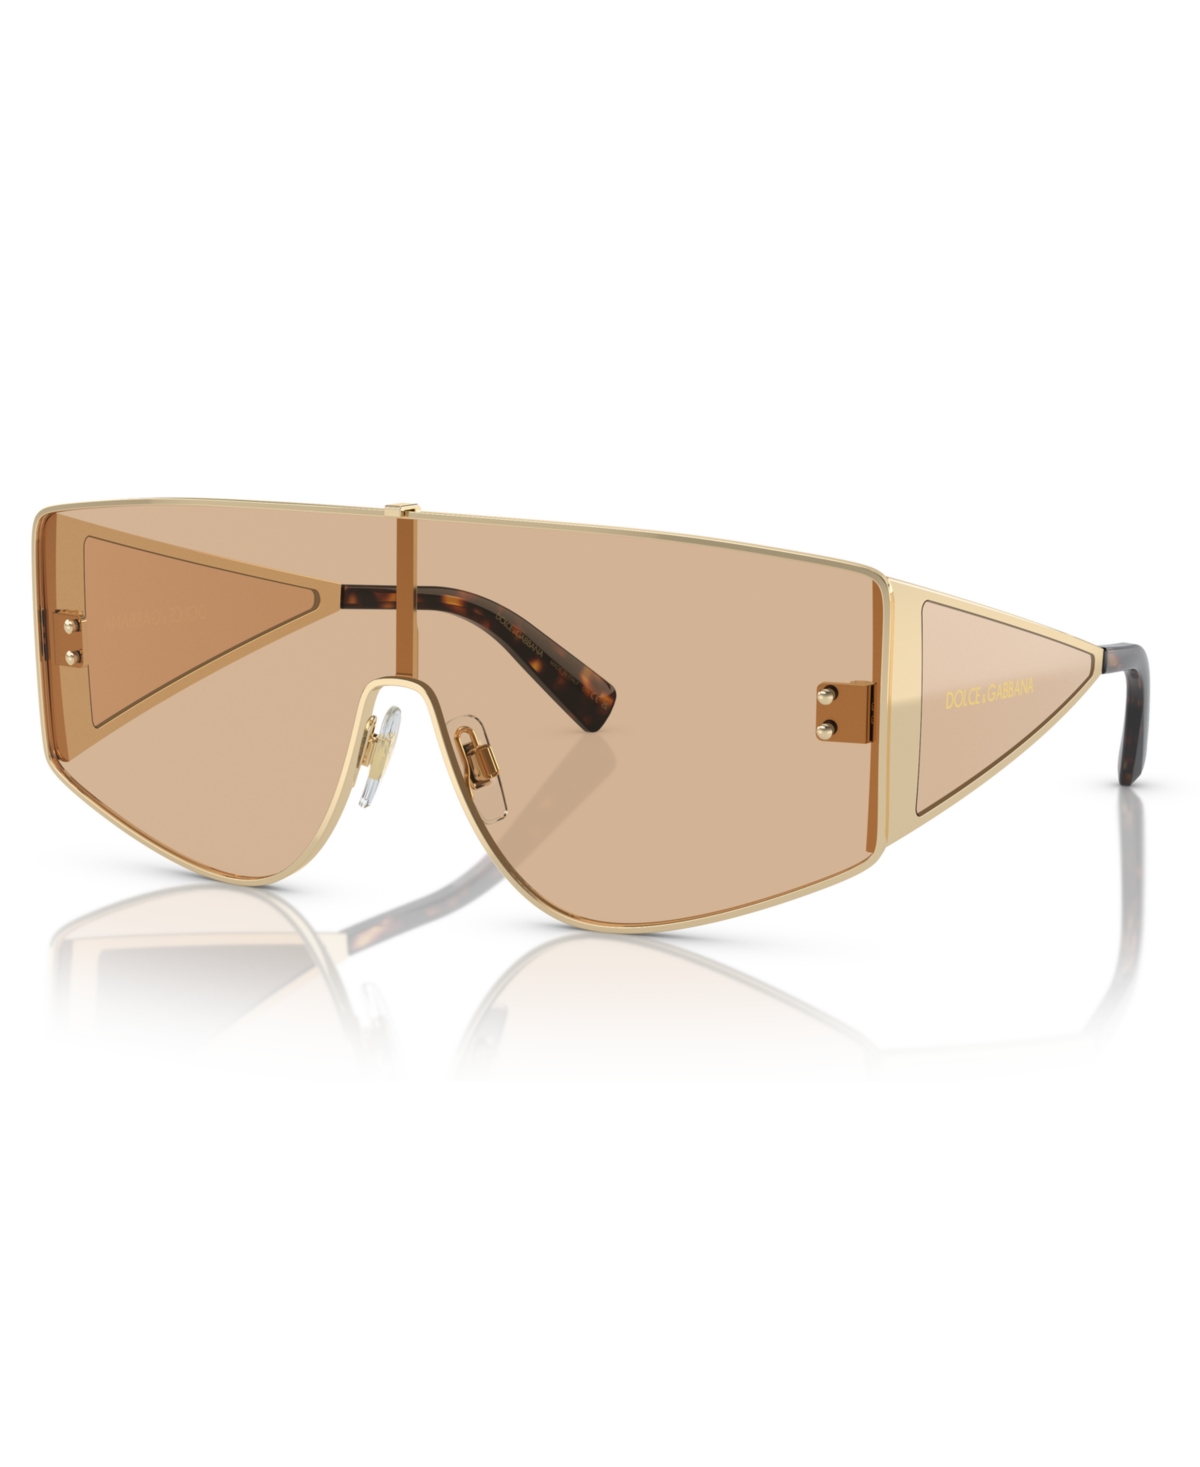 Dolce&Gabbana Men's Sunglasses, Dg2305 - Light Gold